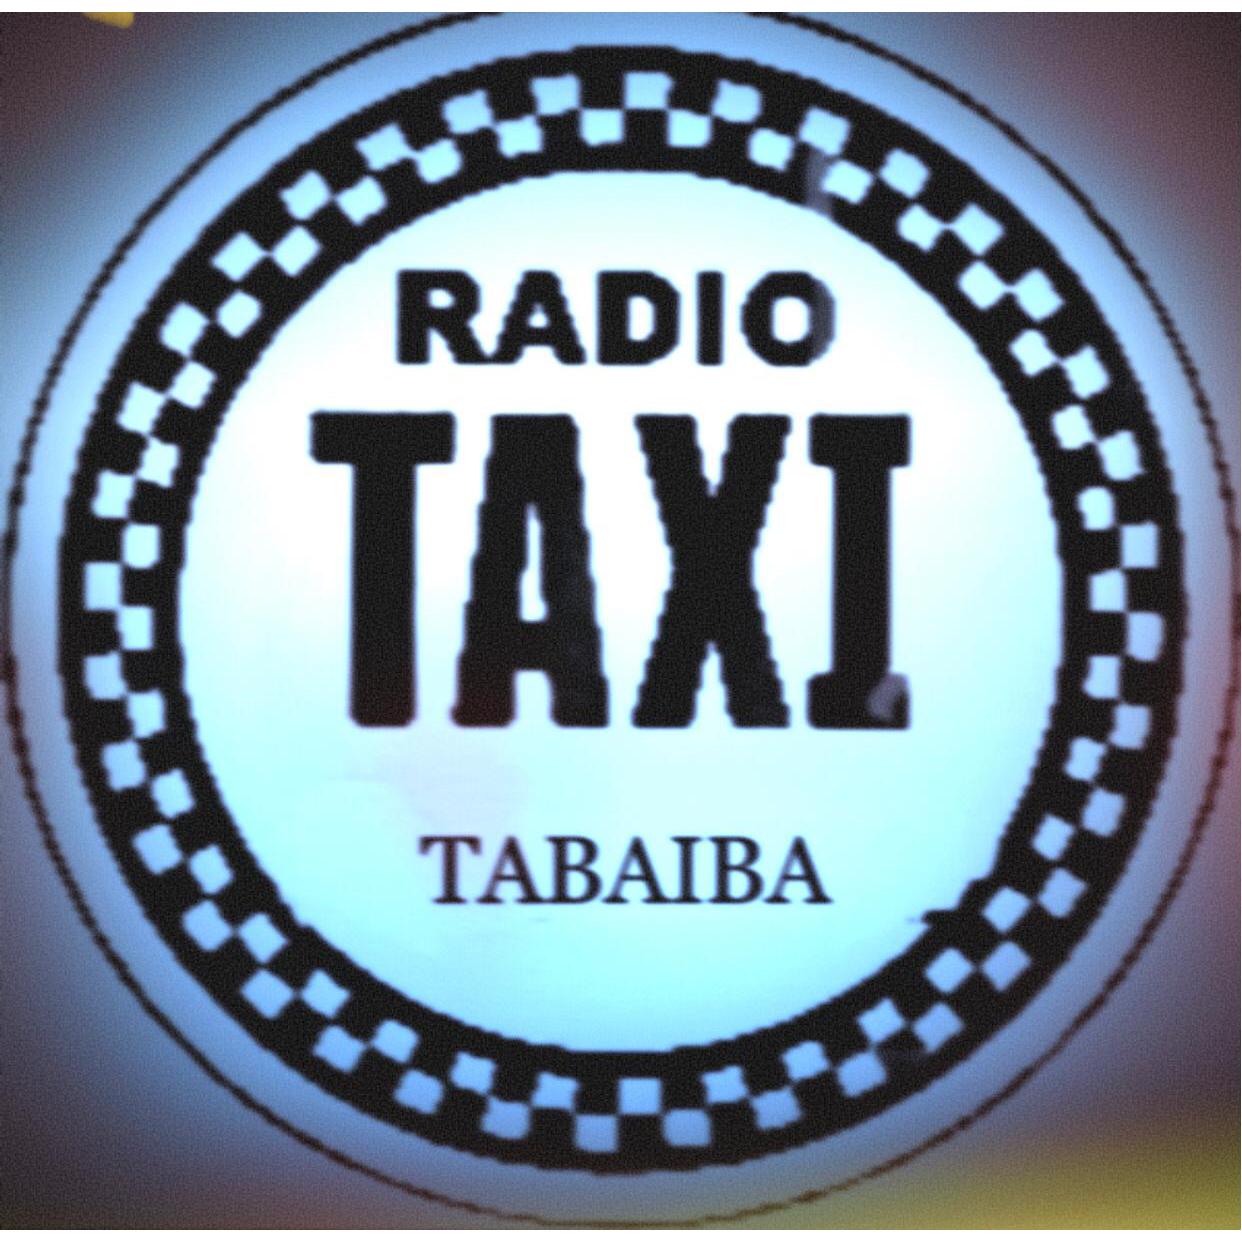 Radio Taxi Tabaiba Logo